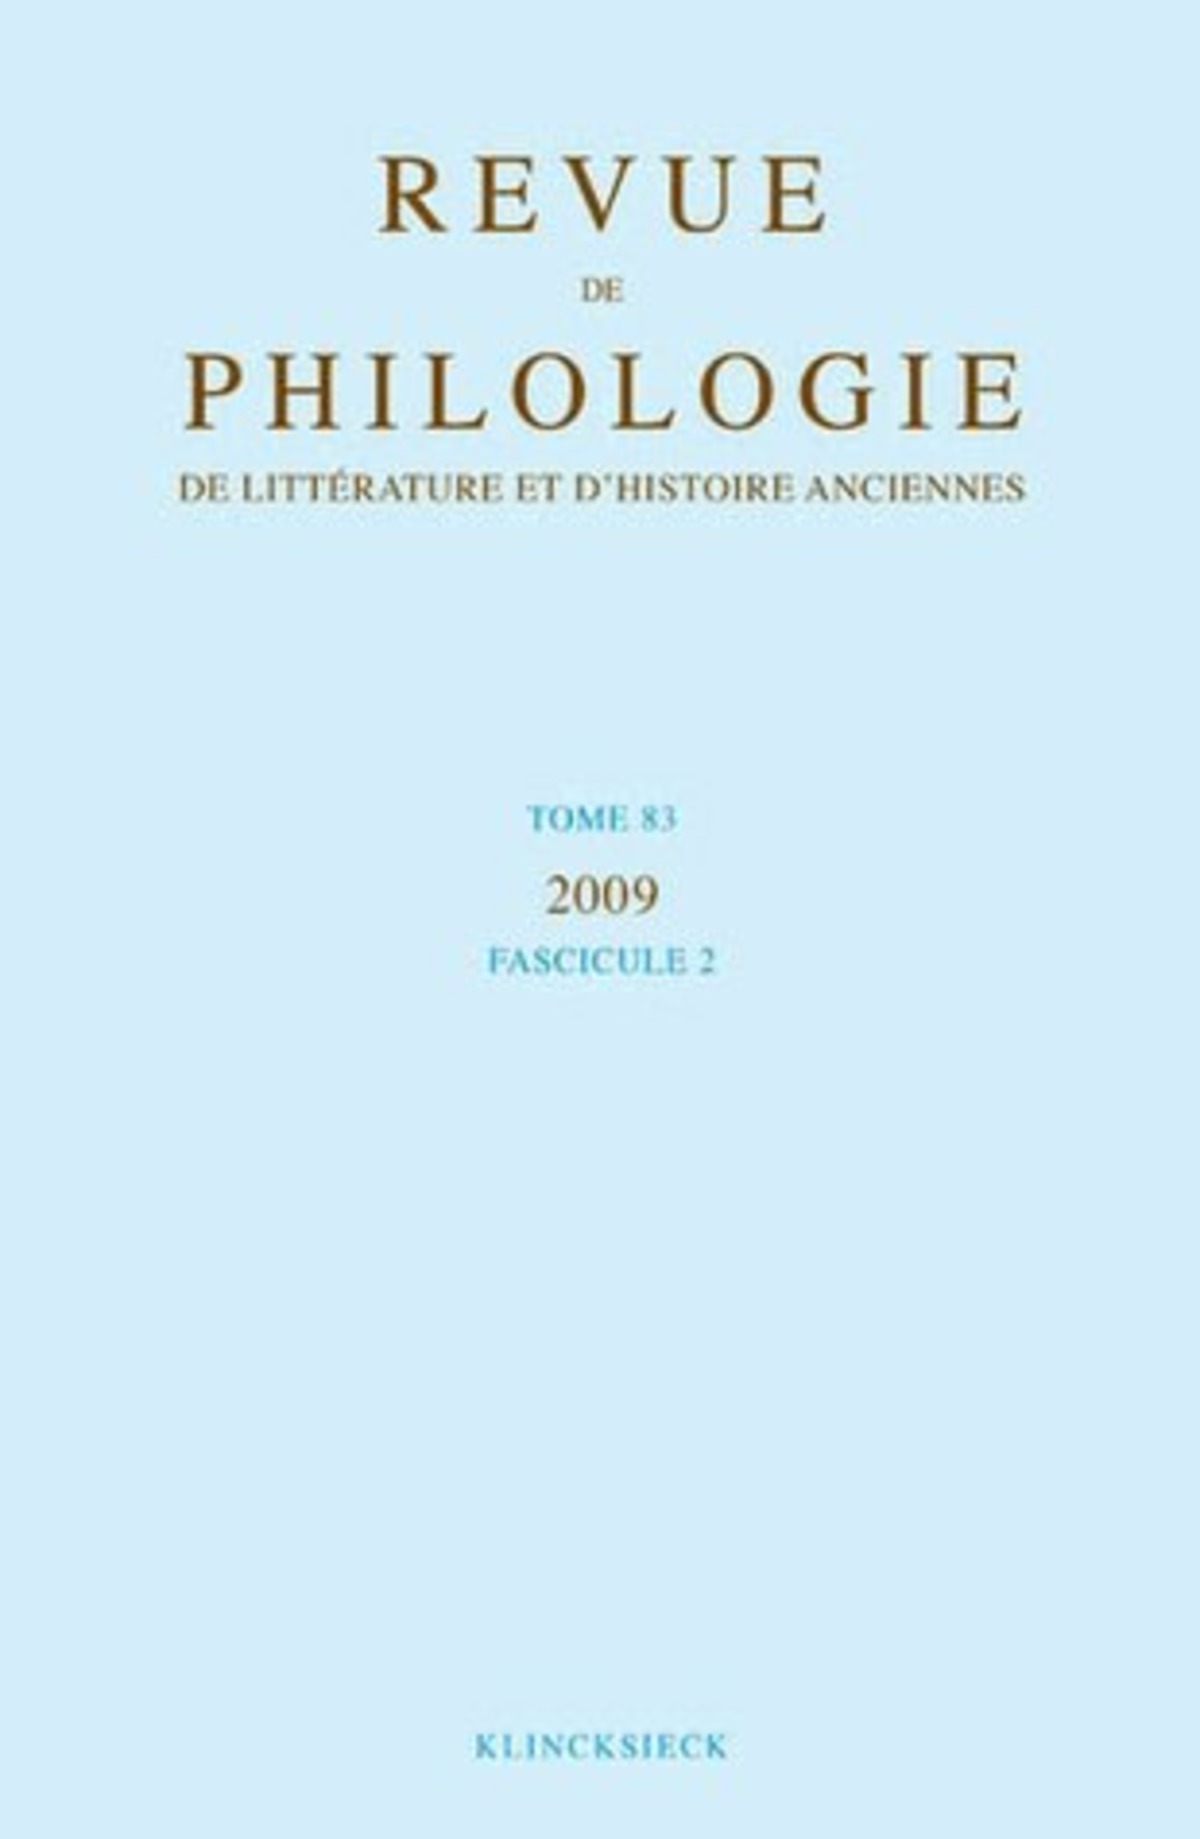 Revue de philologie, de littérature et d'histoire anciennes volume 83